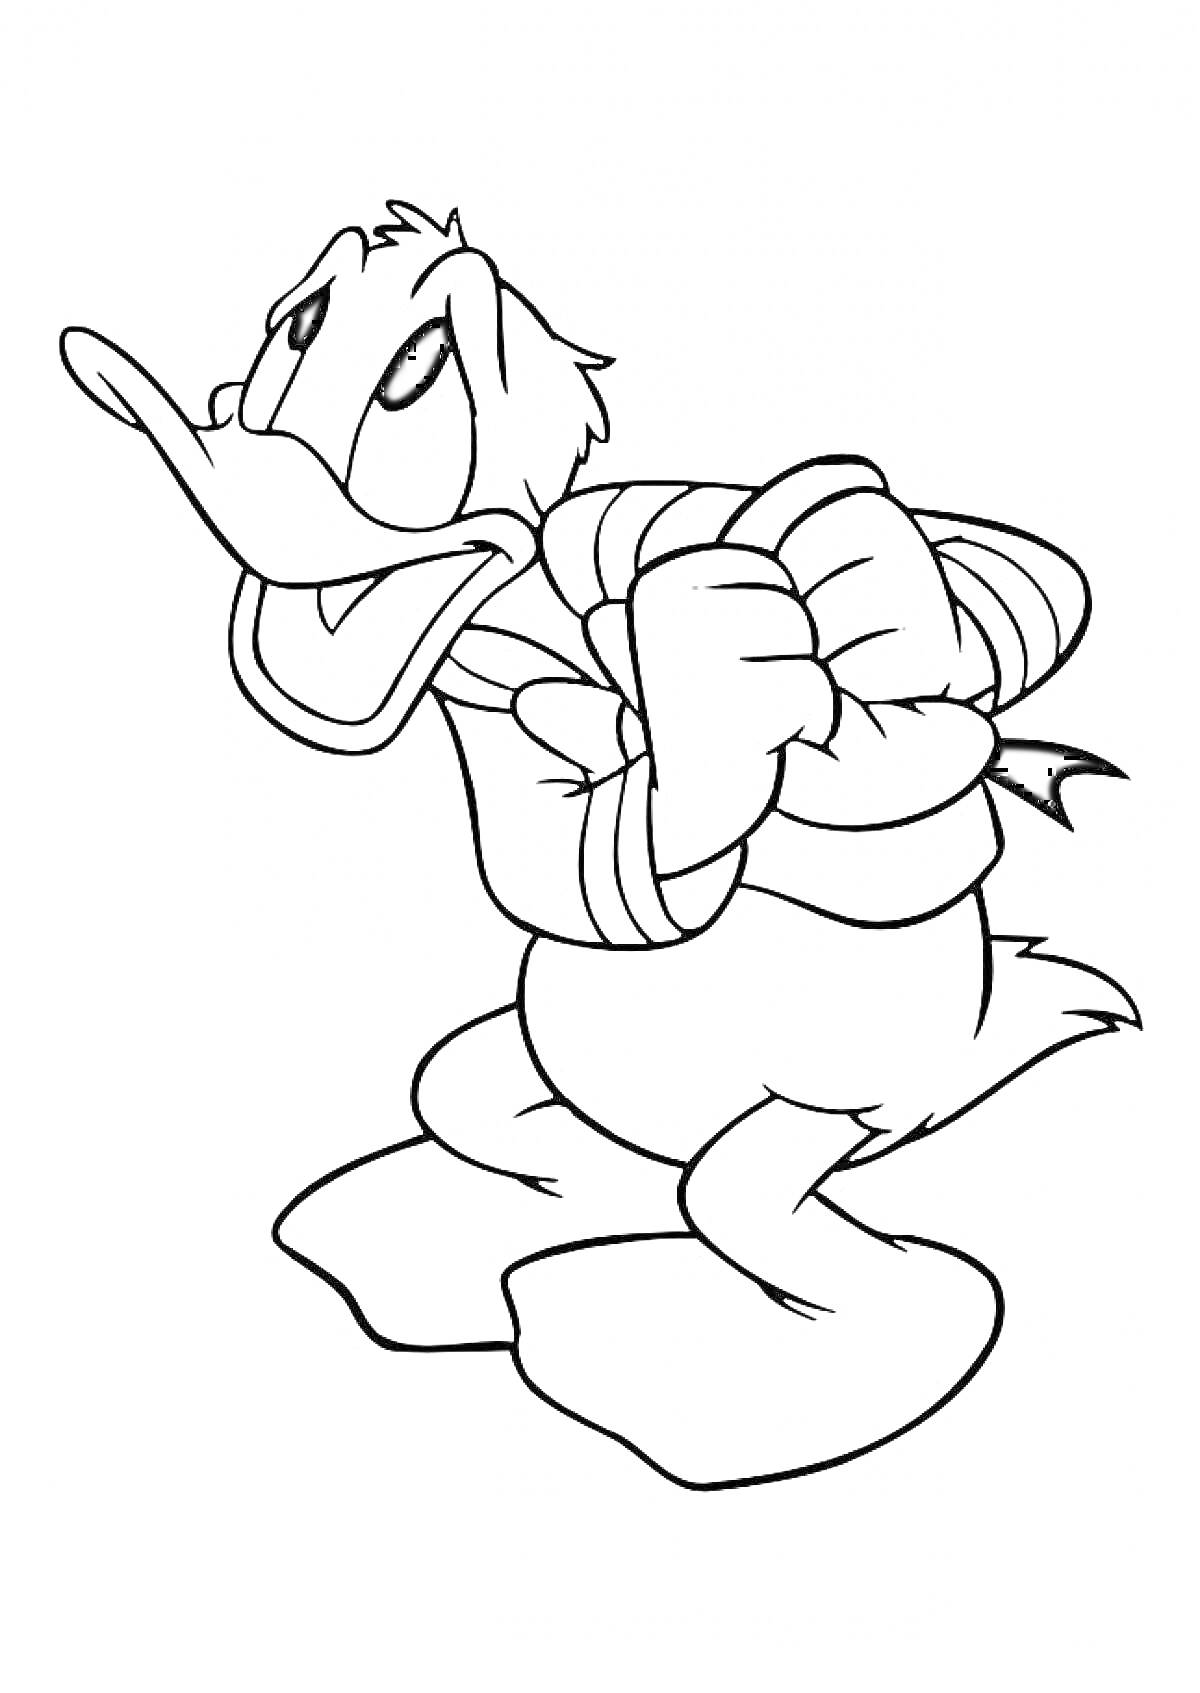 Дональд Дак в морской тельняшке с поднятыми в гневном жесте руками